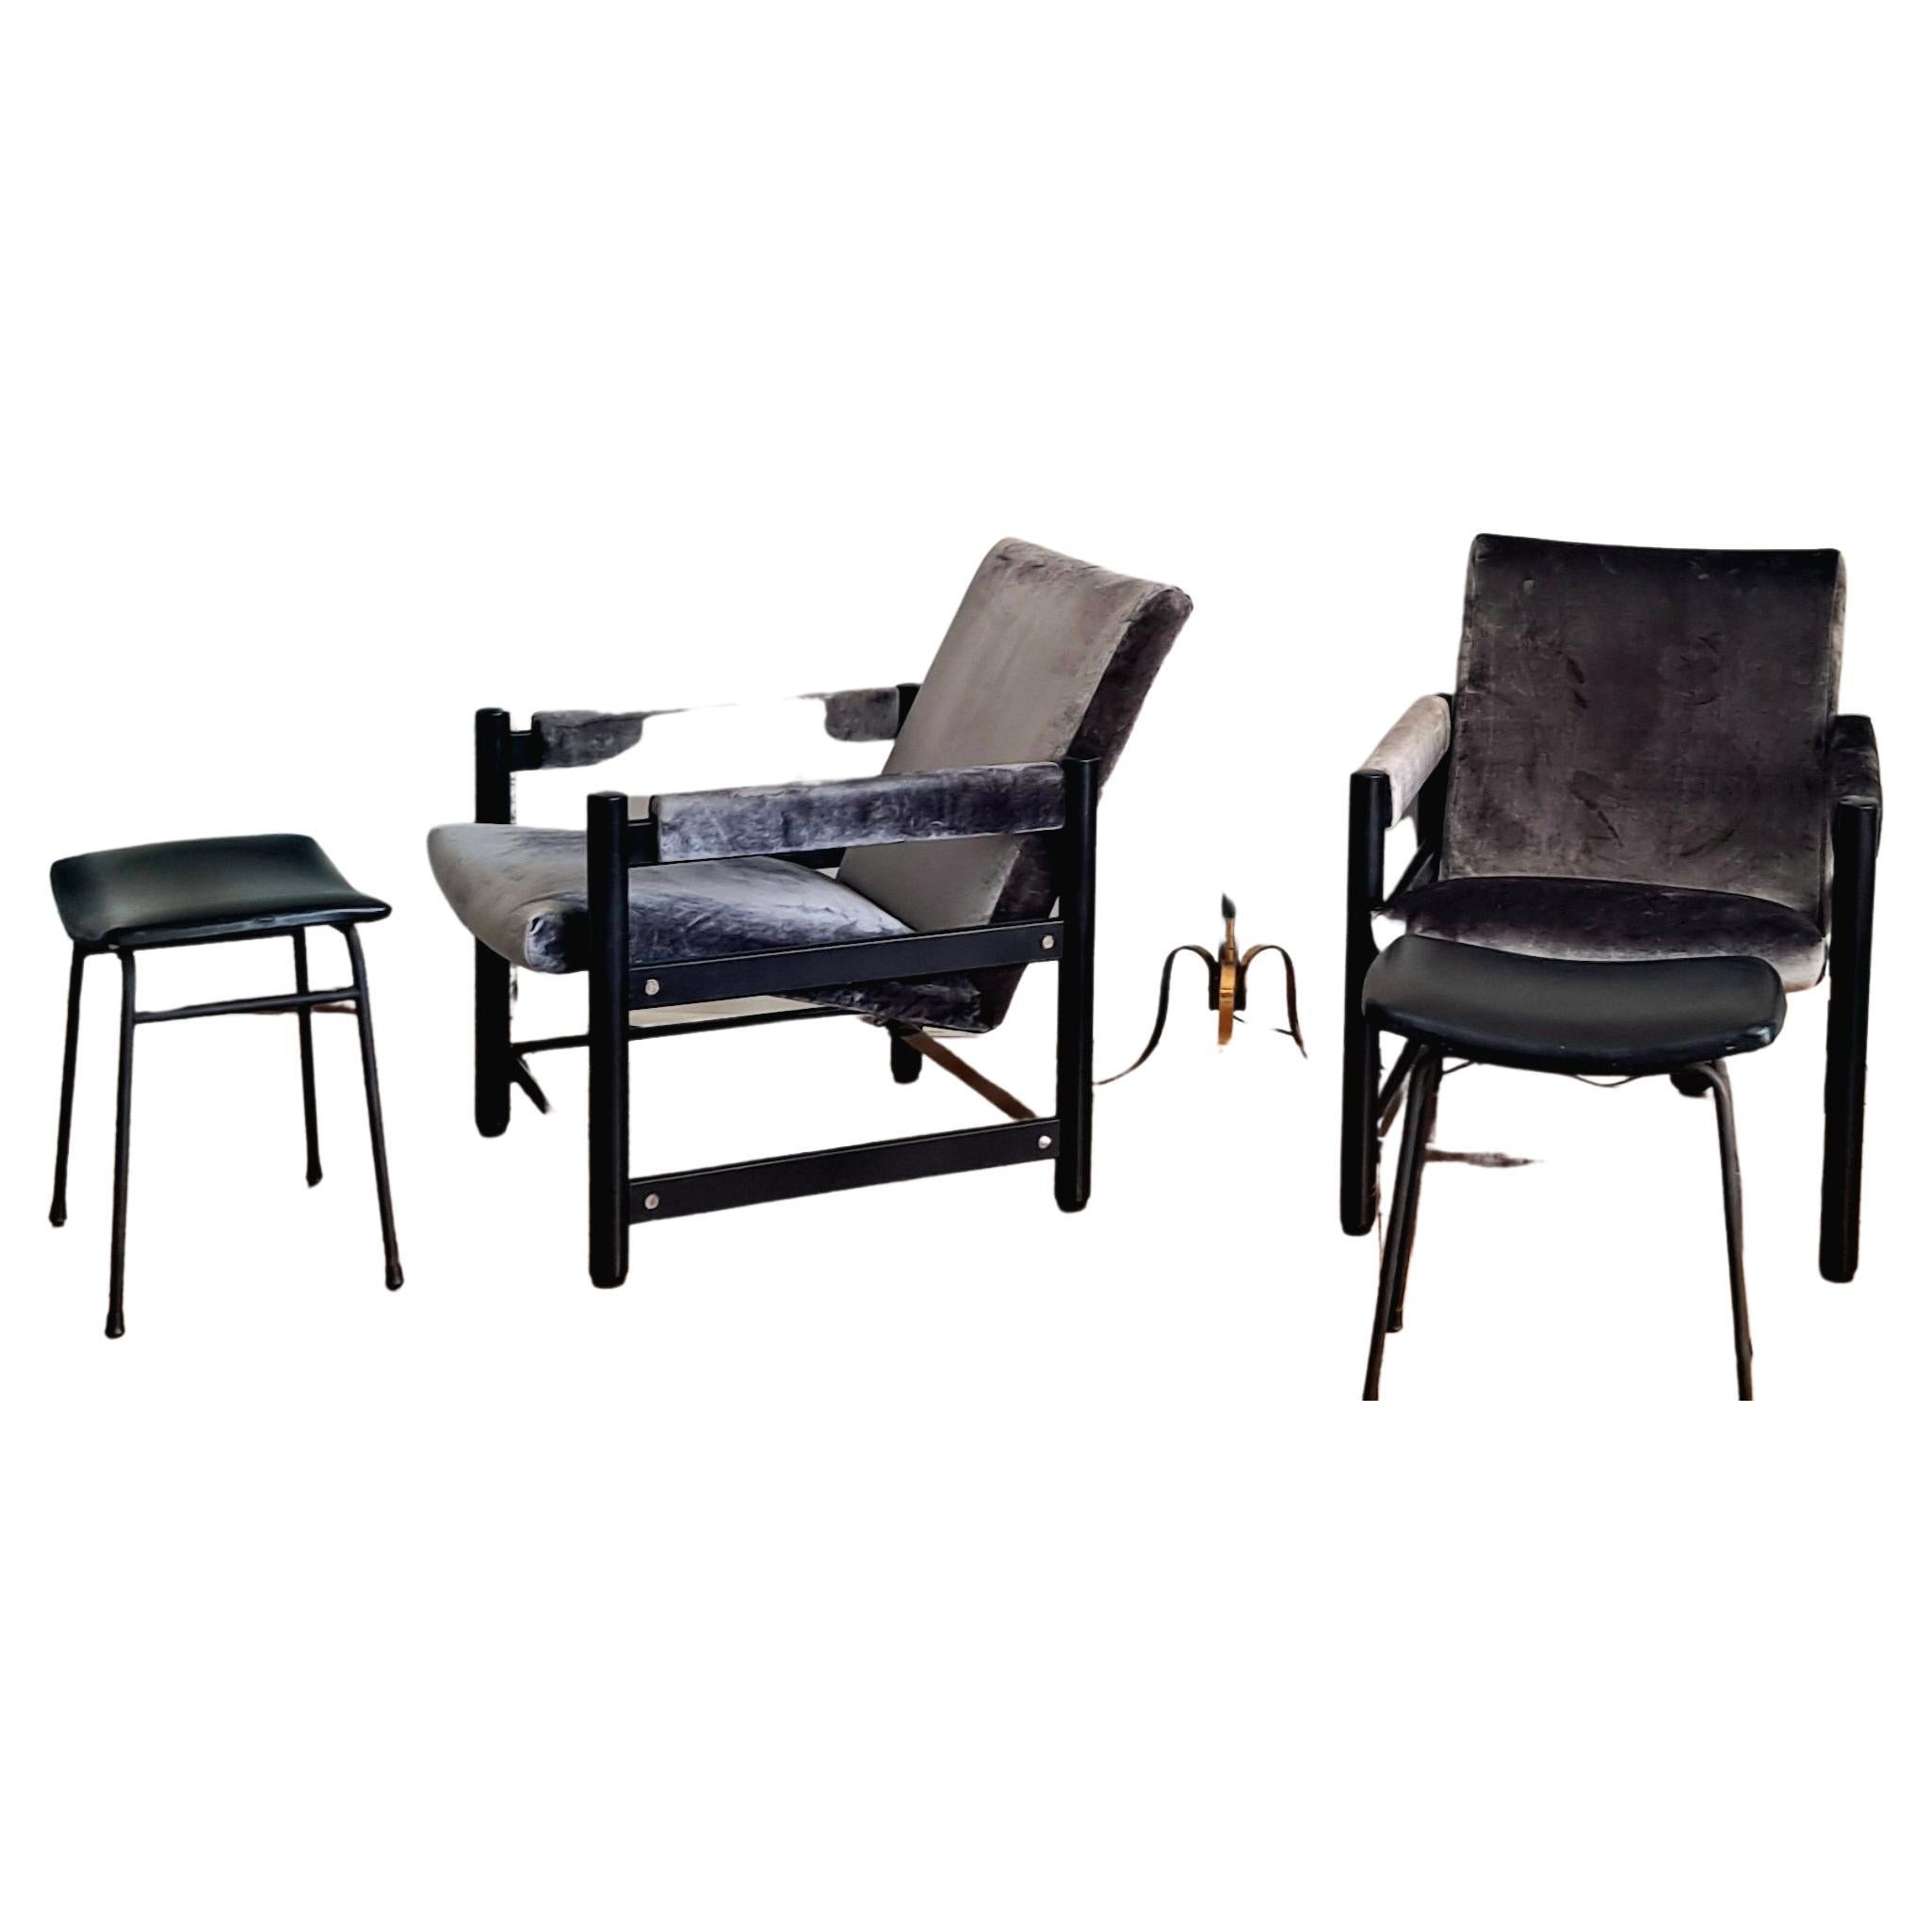 Paire de chaises italiennes, chaises laquées noires avec panneaux latéraux chromés et  nouvelle sellerie en velours gris. Les chaises s'assoient sur la base en métal comme vous pouvez le voir sur les photos, donc chaque chaise est en deux parties.